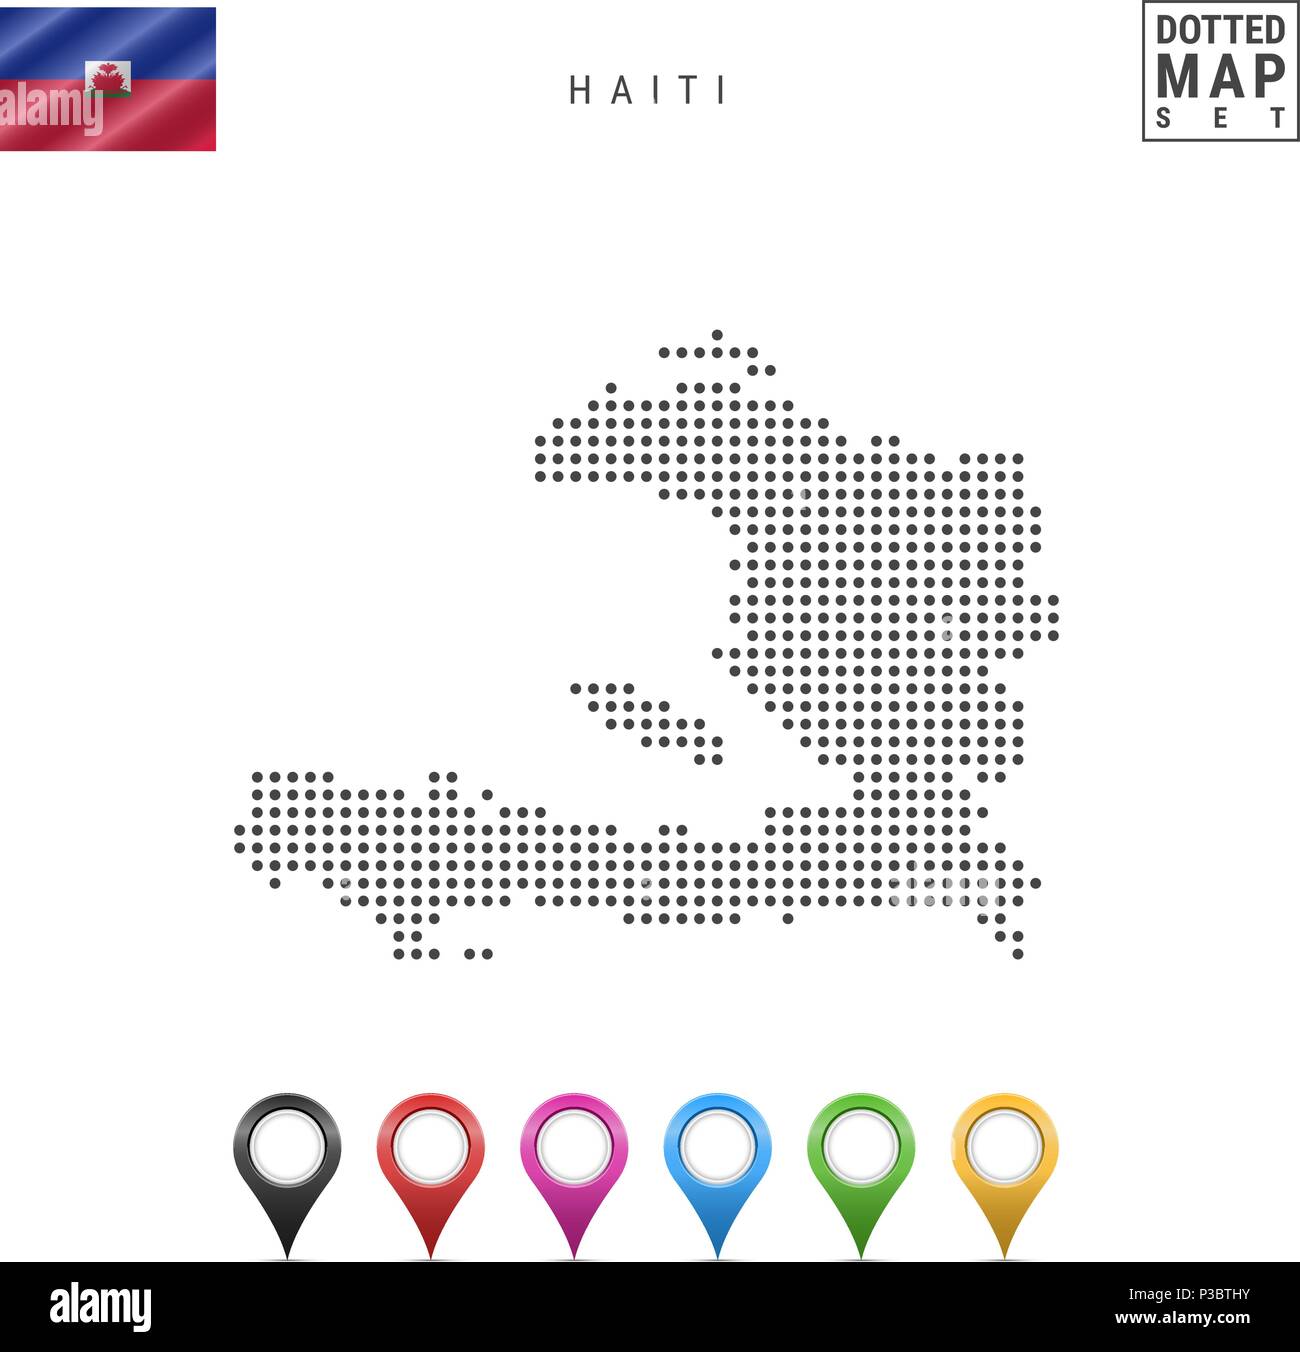 La carte à points vecteur d'Haïti. Silhouette simple d'Haïti. Le drapeau national d'Haïti. Ensemble de marqueurs carte multicolore Illustration de Vecteur